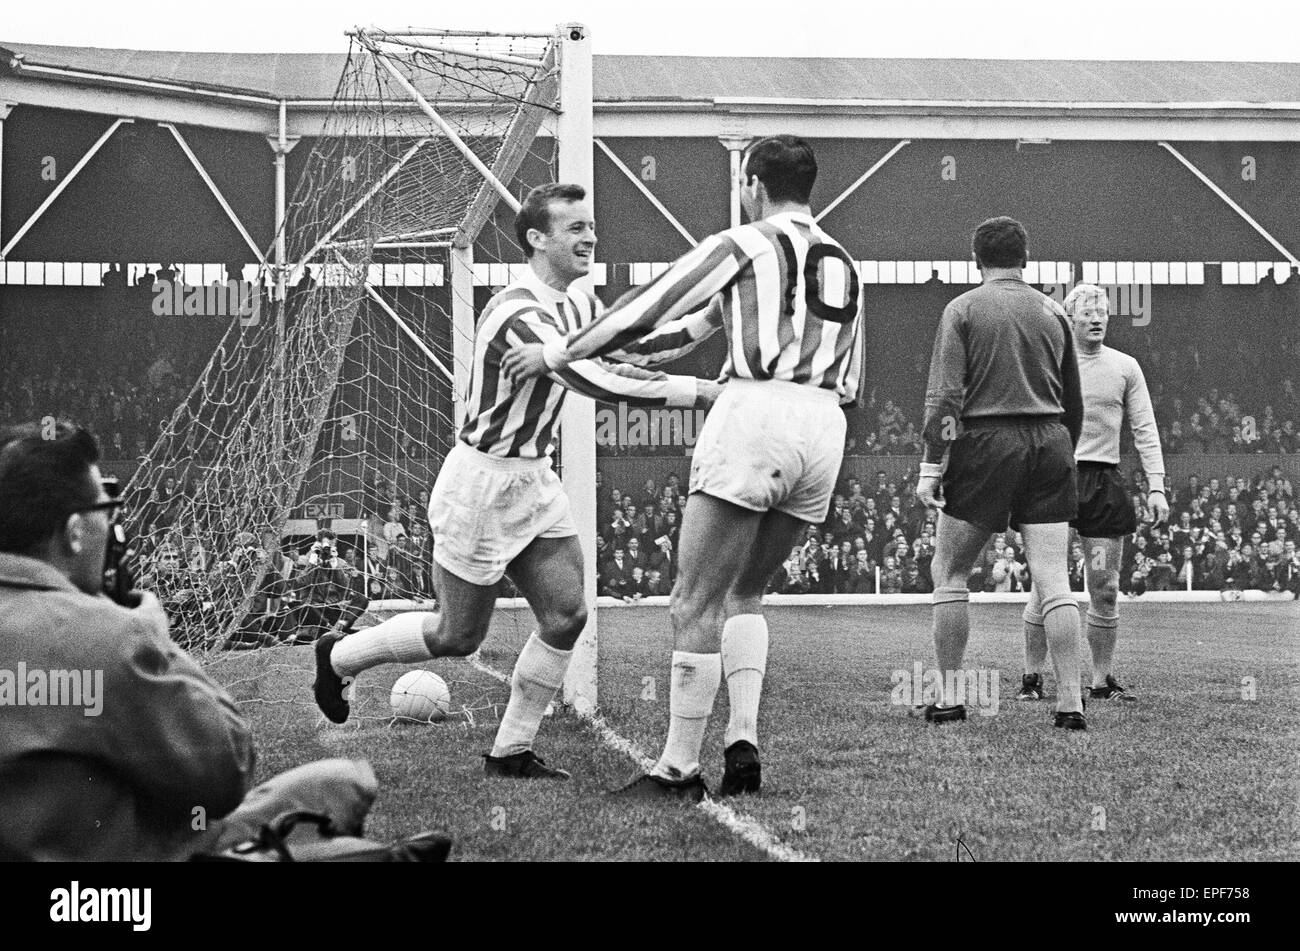 Stoke City 3 - 2 Southampton, match de championnat, le samedi 23 septembre 1967. Banque D'Images